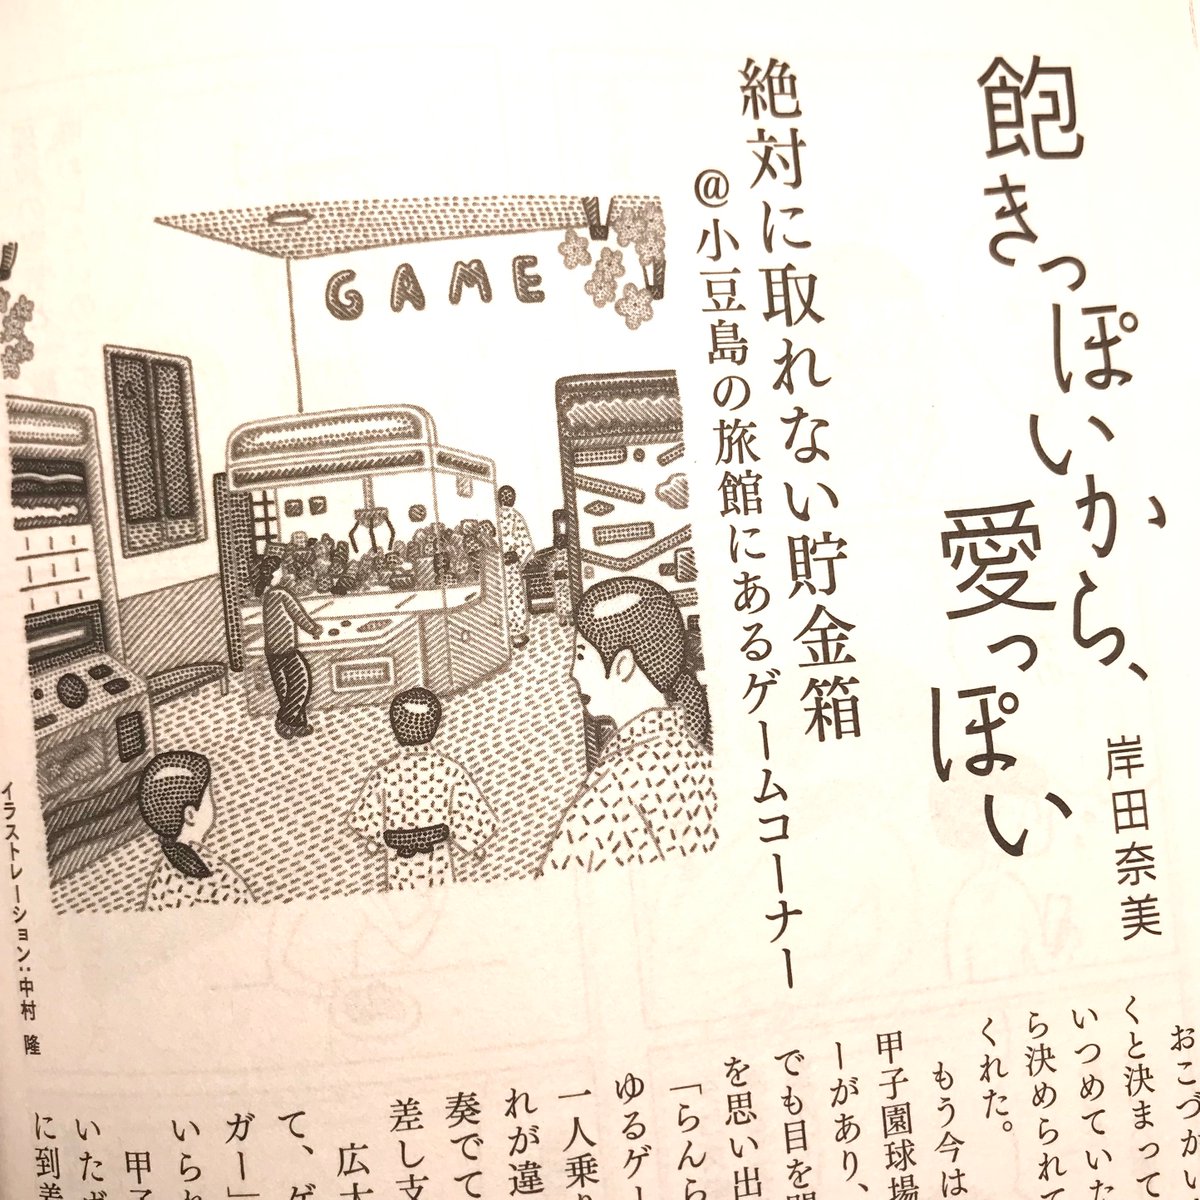 「小説現代 4月号」岸田奈美さんの「飽きっぽいから、愛っぽい」、今月の挿し絵は温泉宿のゲームコーナーを描きました(画像は前回、前々回も)。 